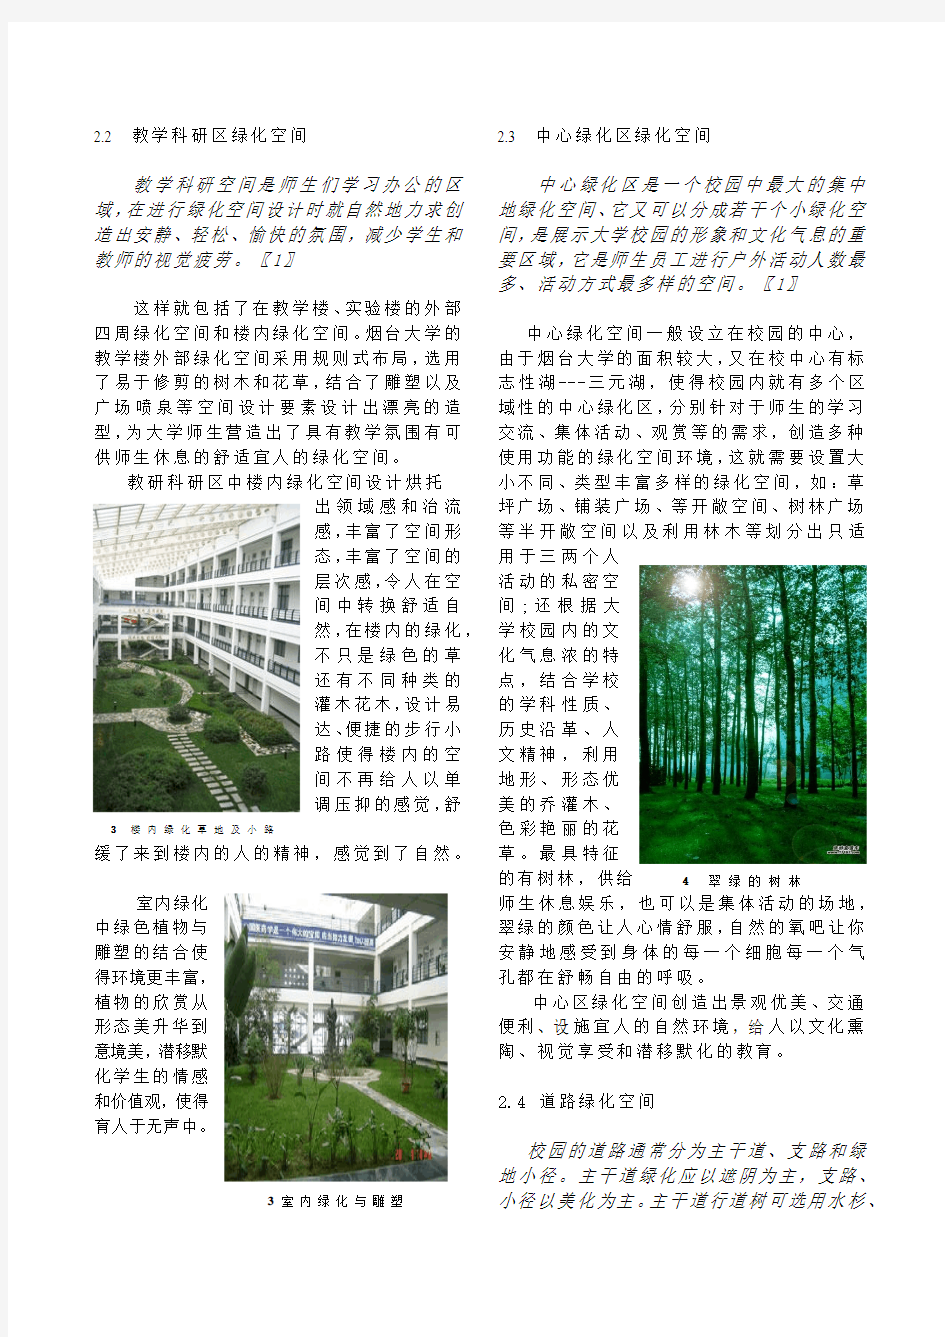 大学校园景观规划中绿化植物空间格局论文